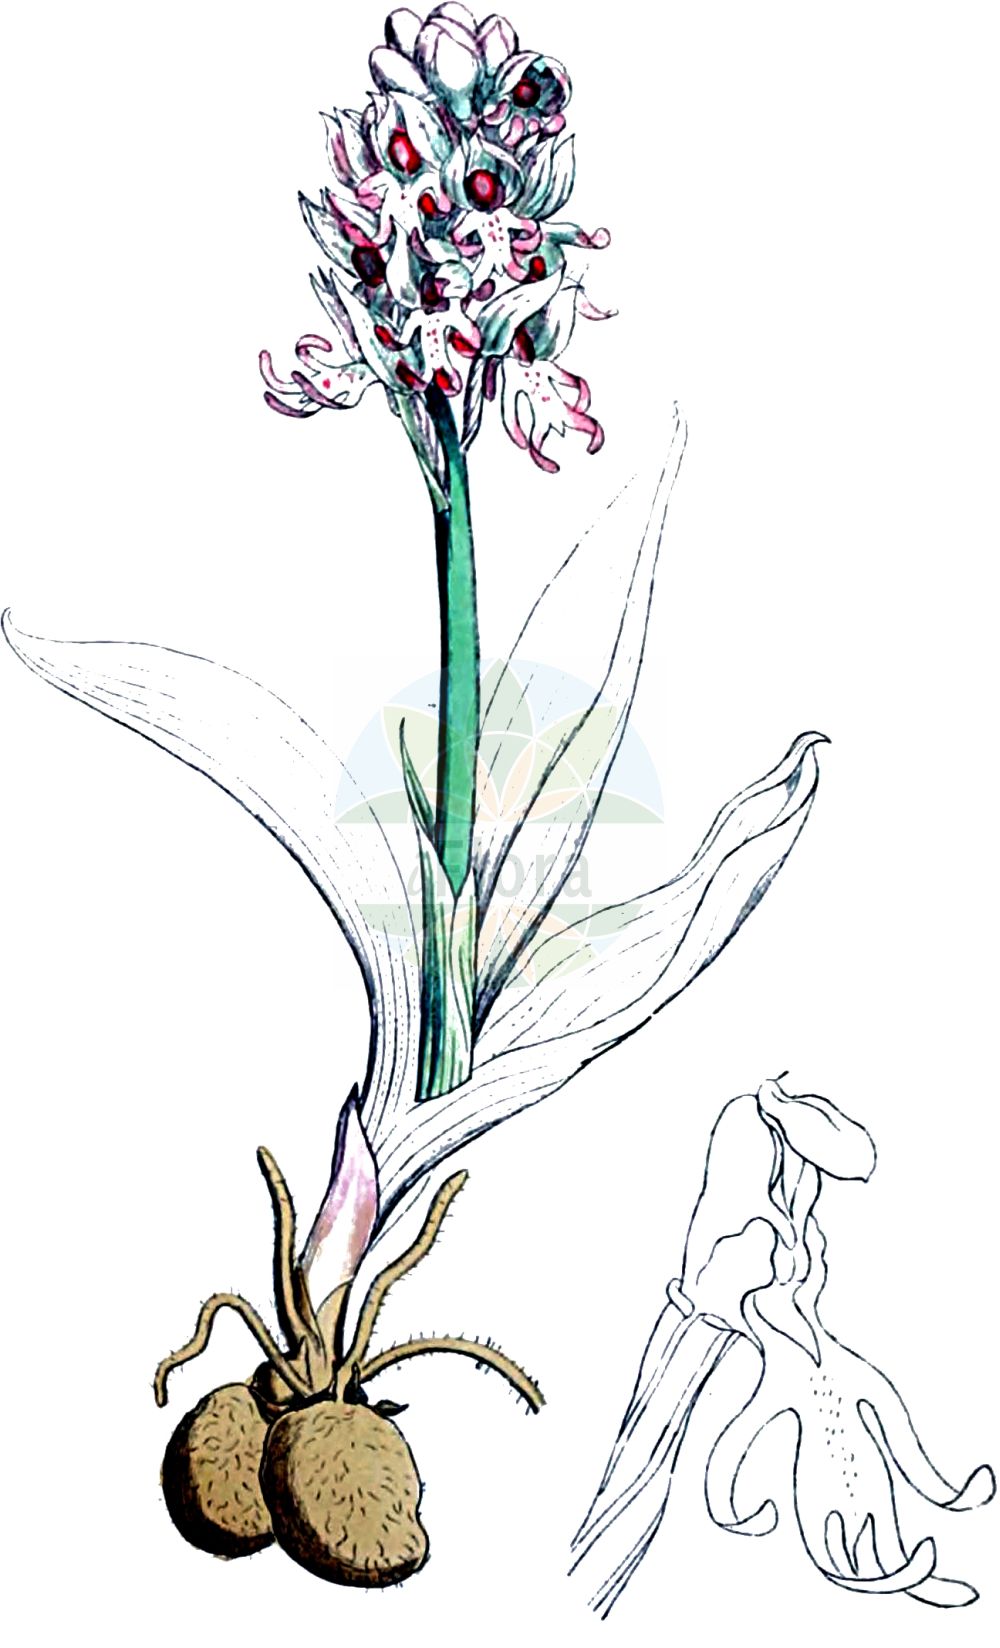 Historische Abbildung von Orchis simia (Affen-Knabenkraut - Monkey Orchid). Das Bild zeigt Blatt, Bluete, Frucht und Same. ---- Historical Drawing of Orchis simia (Affen-Knabenkraut - Monkey Orchid). The image is showing leaf, flower, fruit and seed.(Orchis simia,Affen-Knabenkraut,Monkey Orchid,Orchis simia,Orchis simia var. laxiflora,Affen-Knabenkraut,Monkey Orchid,Orchis,Knabenkraut,Orchidaceae,Knabenkrautgewächse,Orchid family,Blatt,Bluete,Frucht,Same,leaf,flower,fruit,seed,Sowerby (1790-1813))